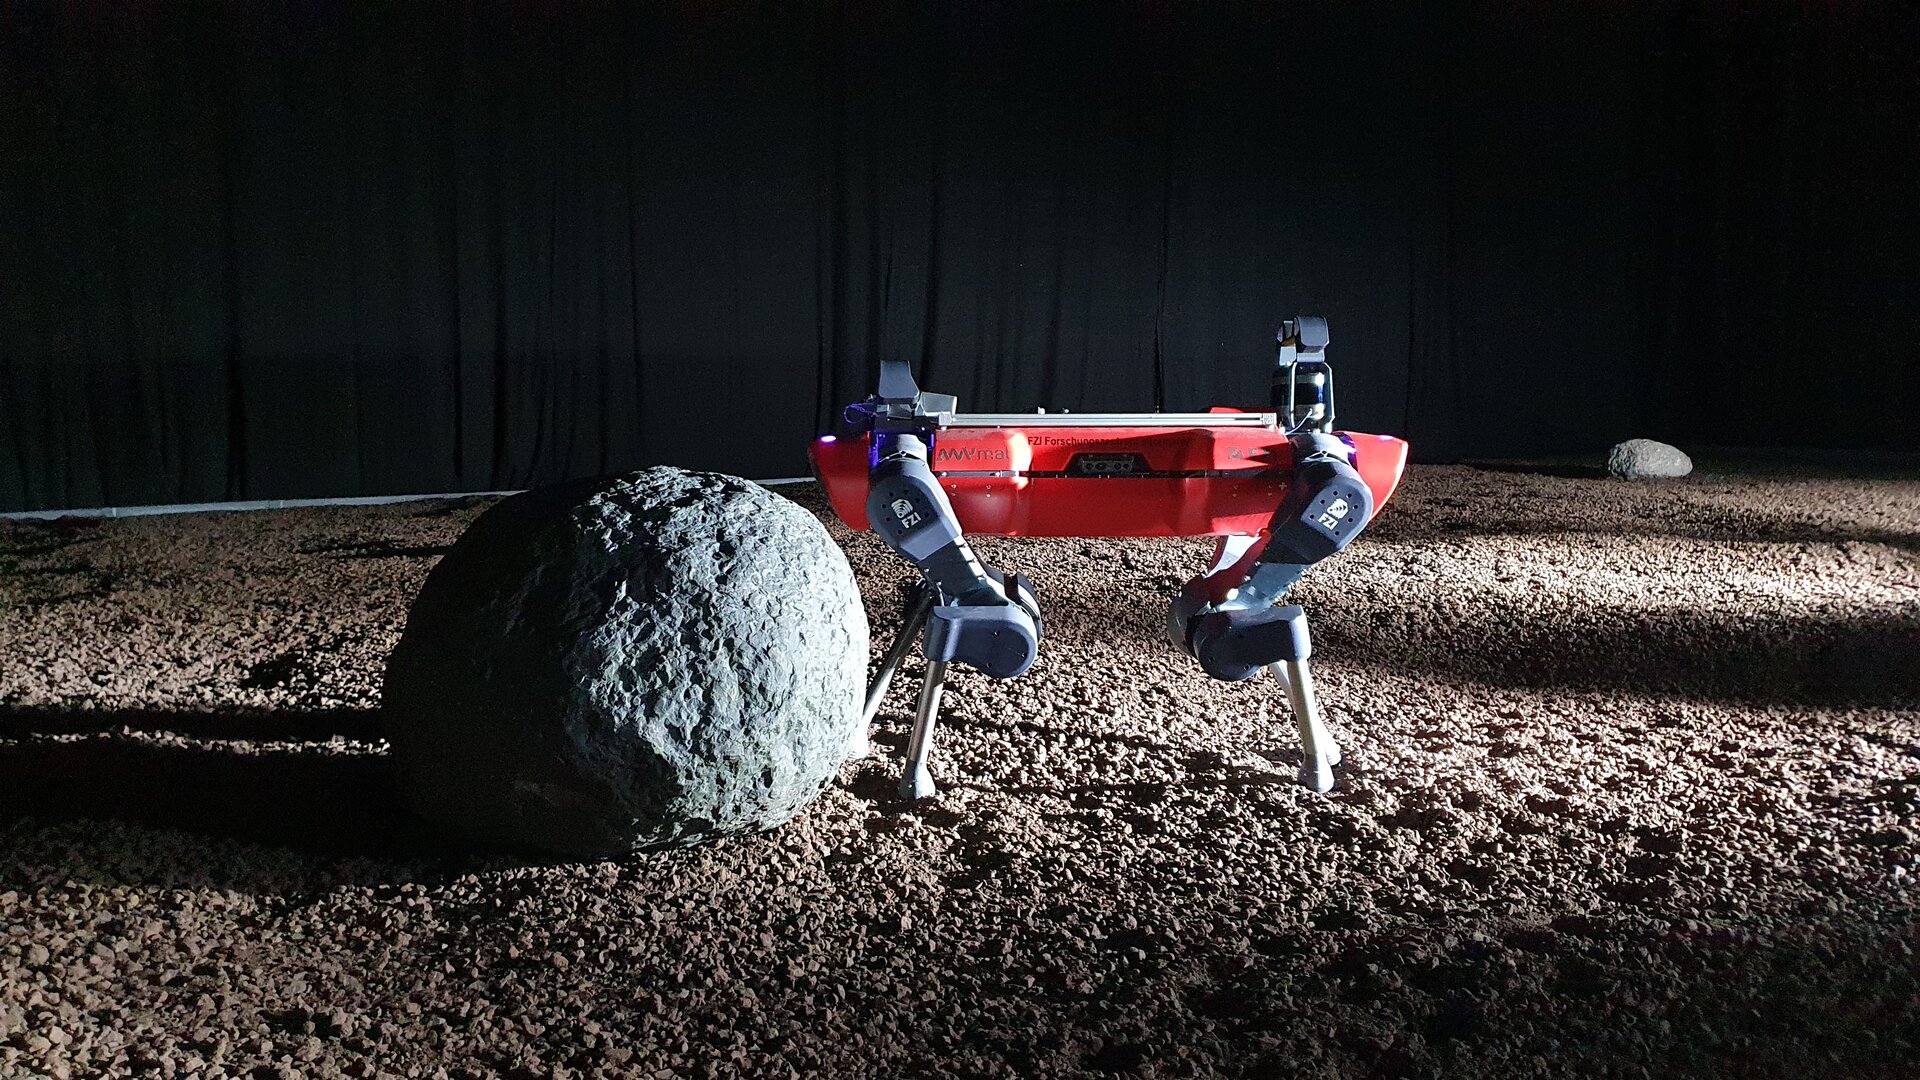 Rover exploring the analog lunar environment